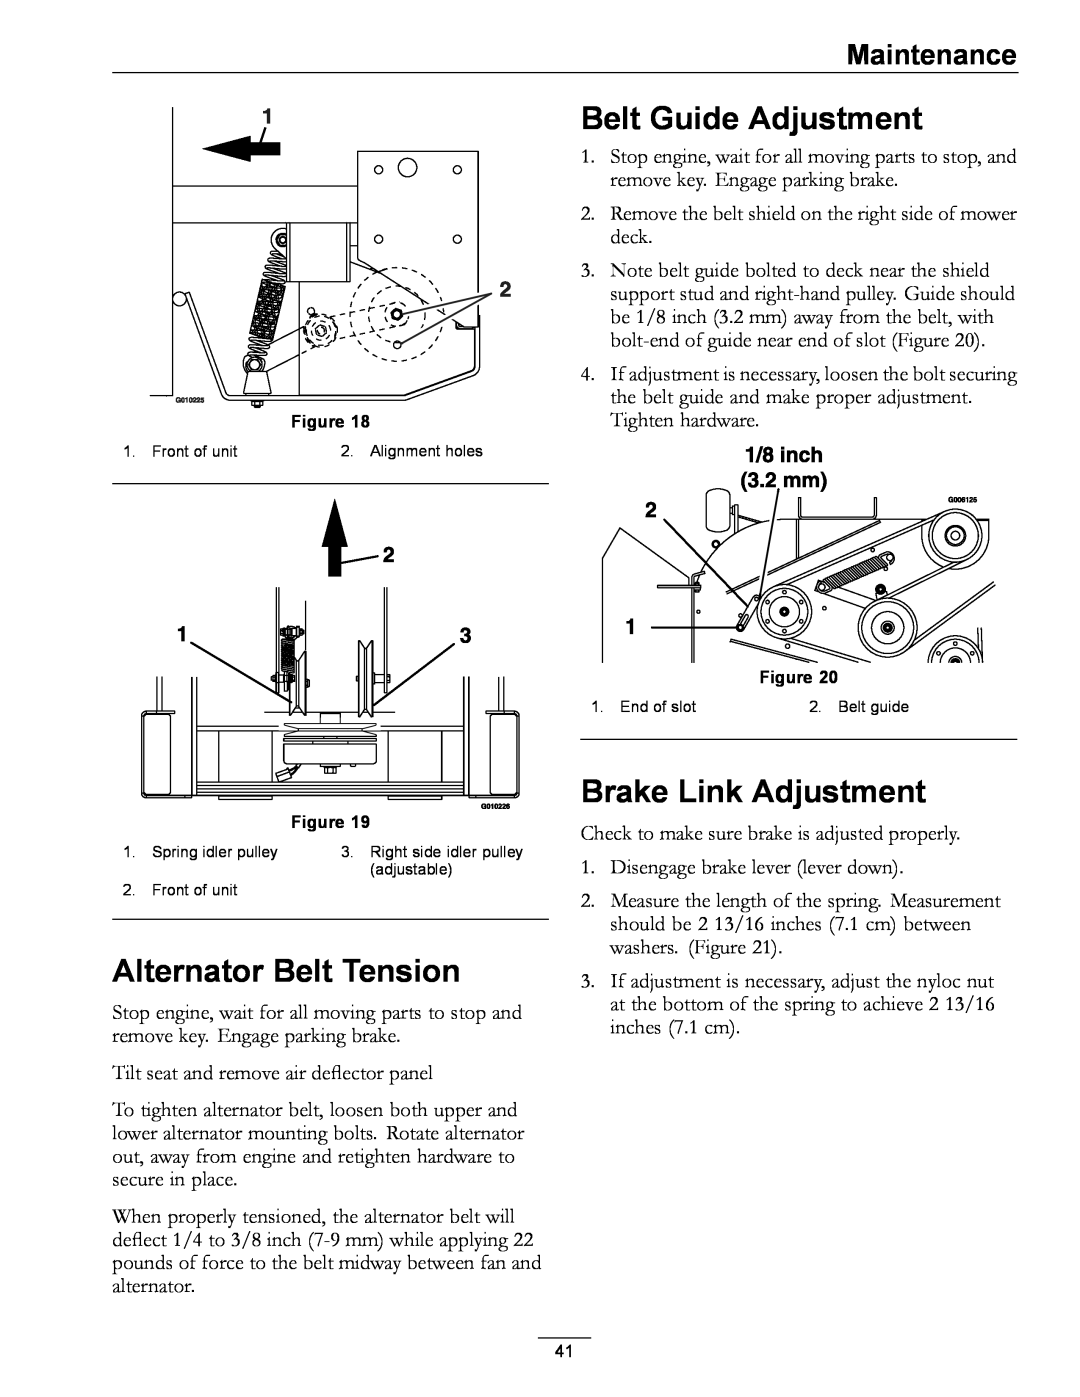 Exmark 0 Alternator Belt Tension, Belt Guide Adjustment, Brake Link Adjustment, Maintenance, Front of unit, adjustable 